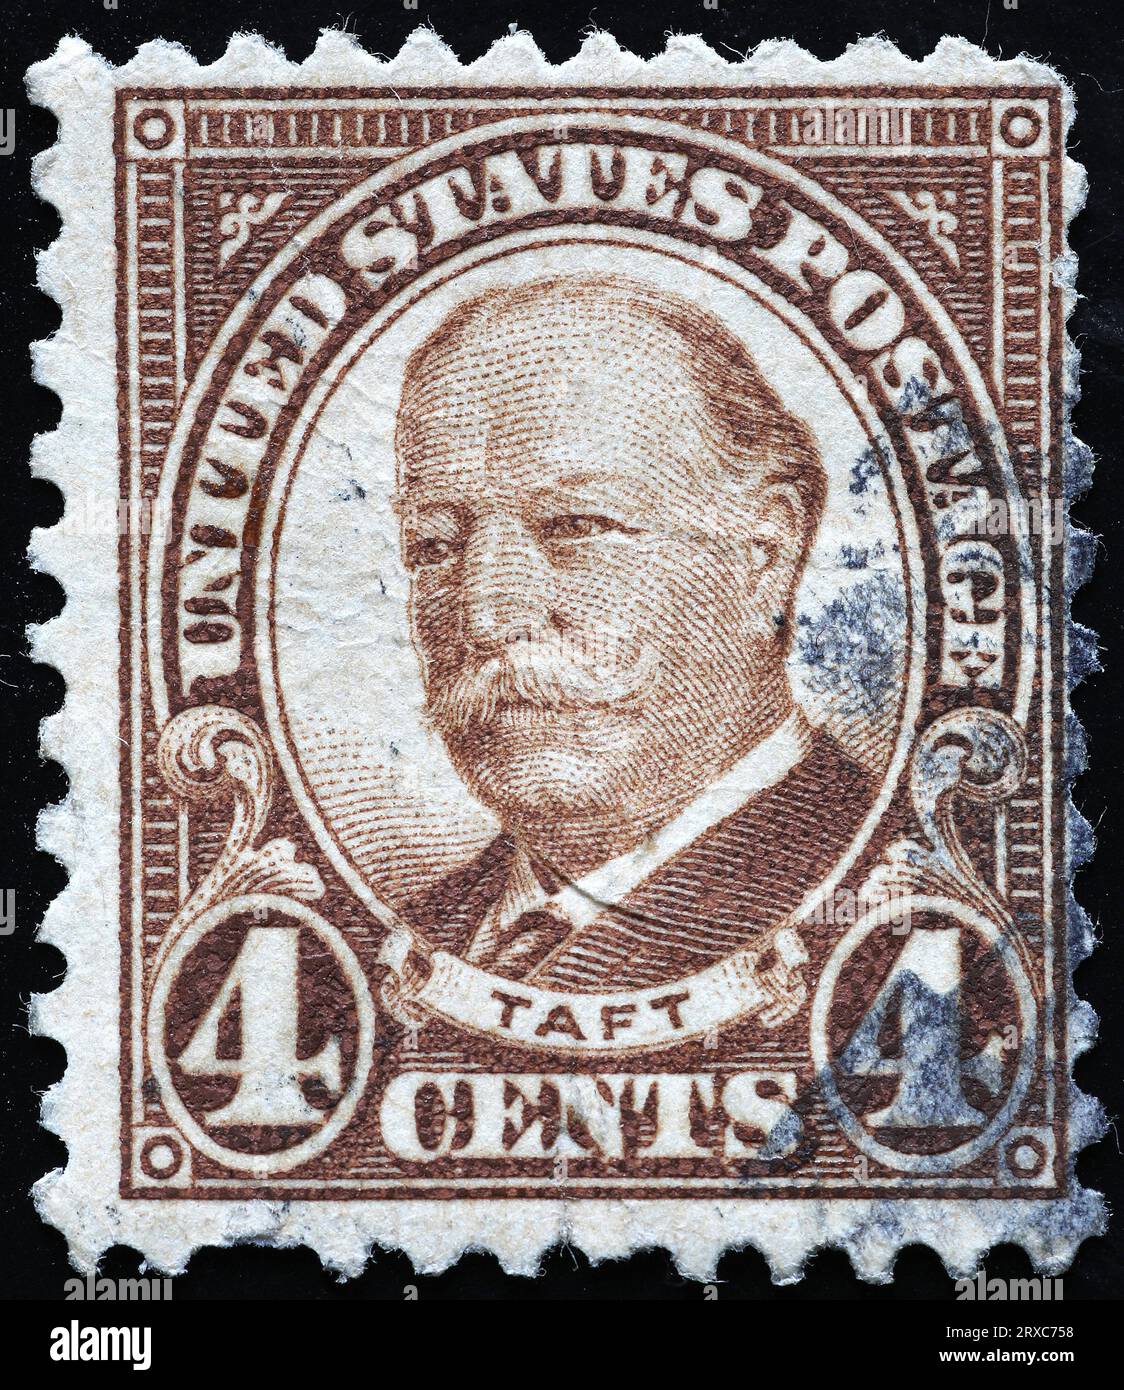 Président William Howard Taft sur timbre américain vintage Banque D'Images